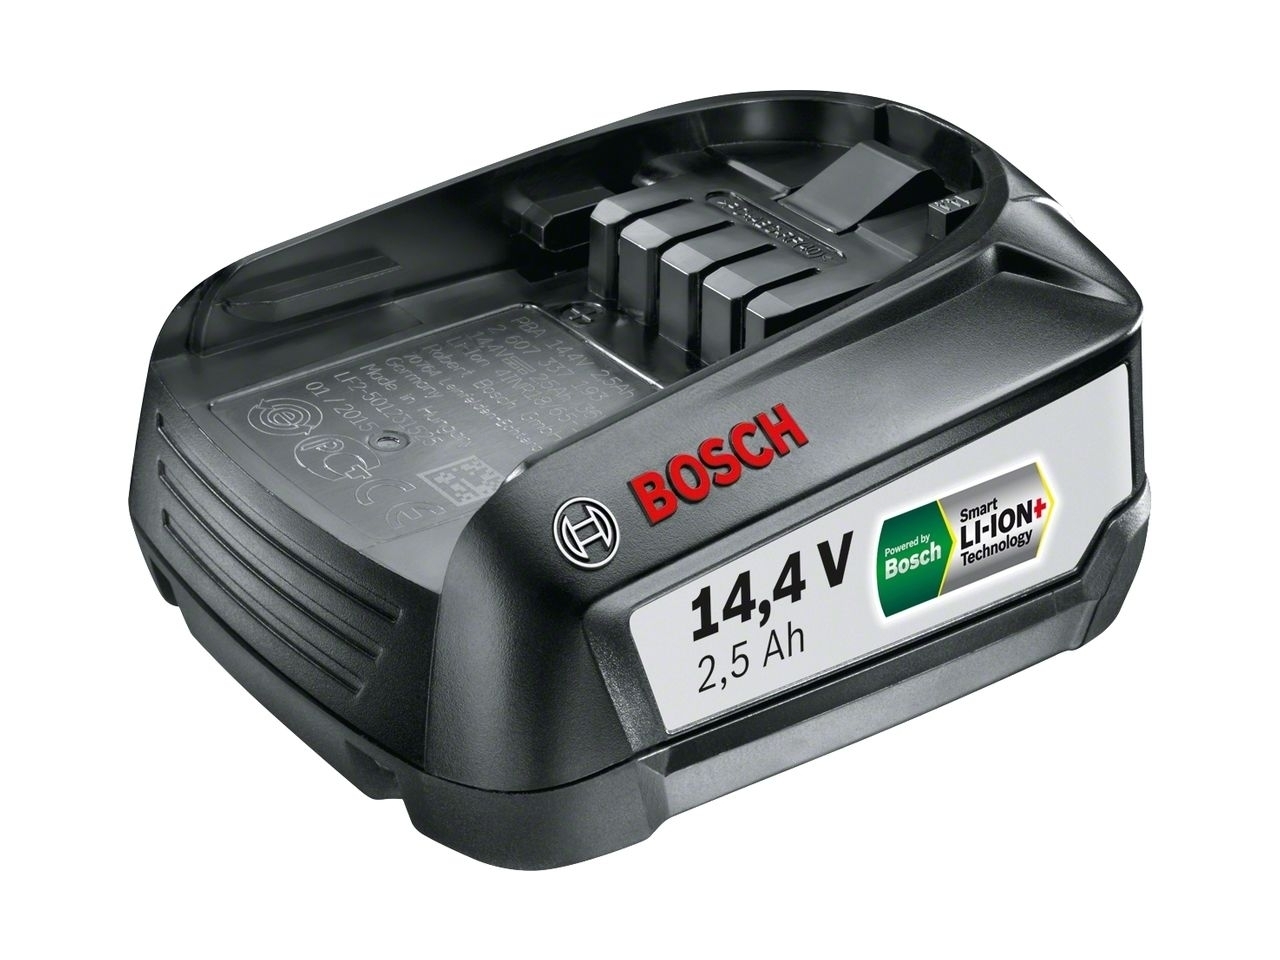 18v battery. Bosch bcs61pet PROANIMAL. Bosch Power for all 18v аккумулятор. Пылесос Bosch bcs61pet. Bosch 18v 3.0Ah.